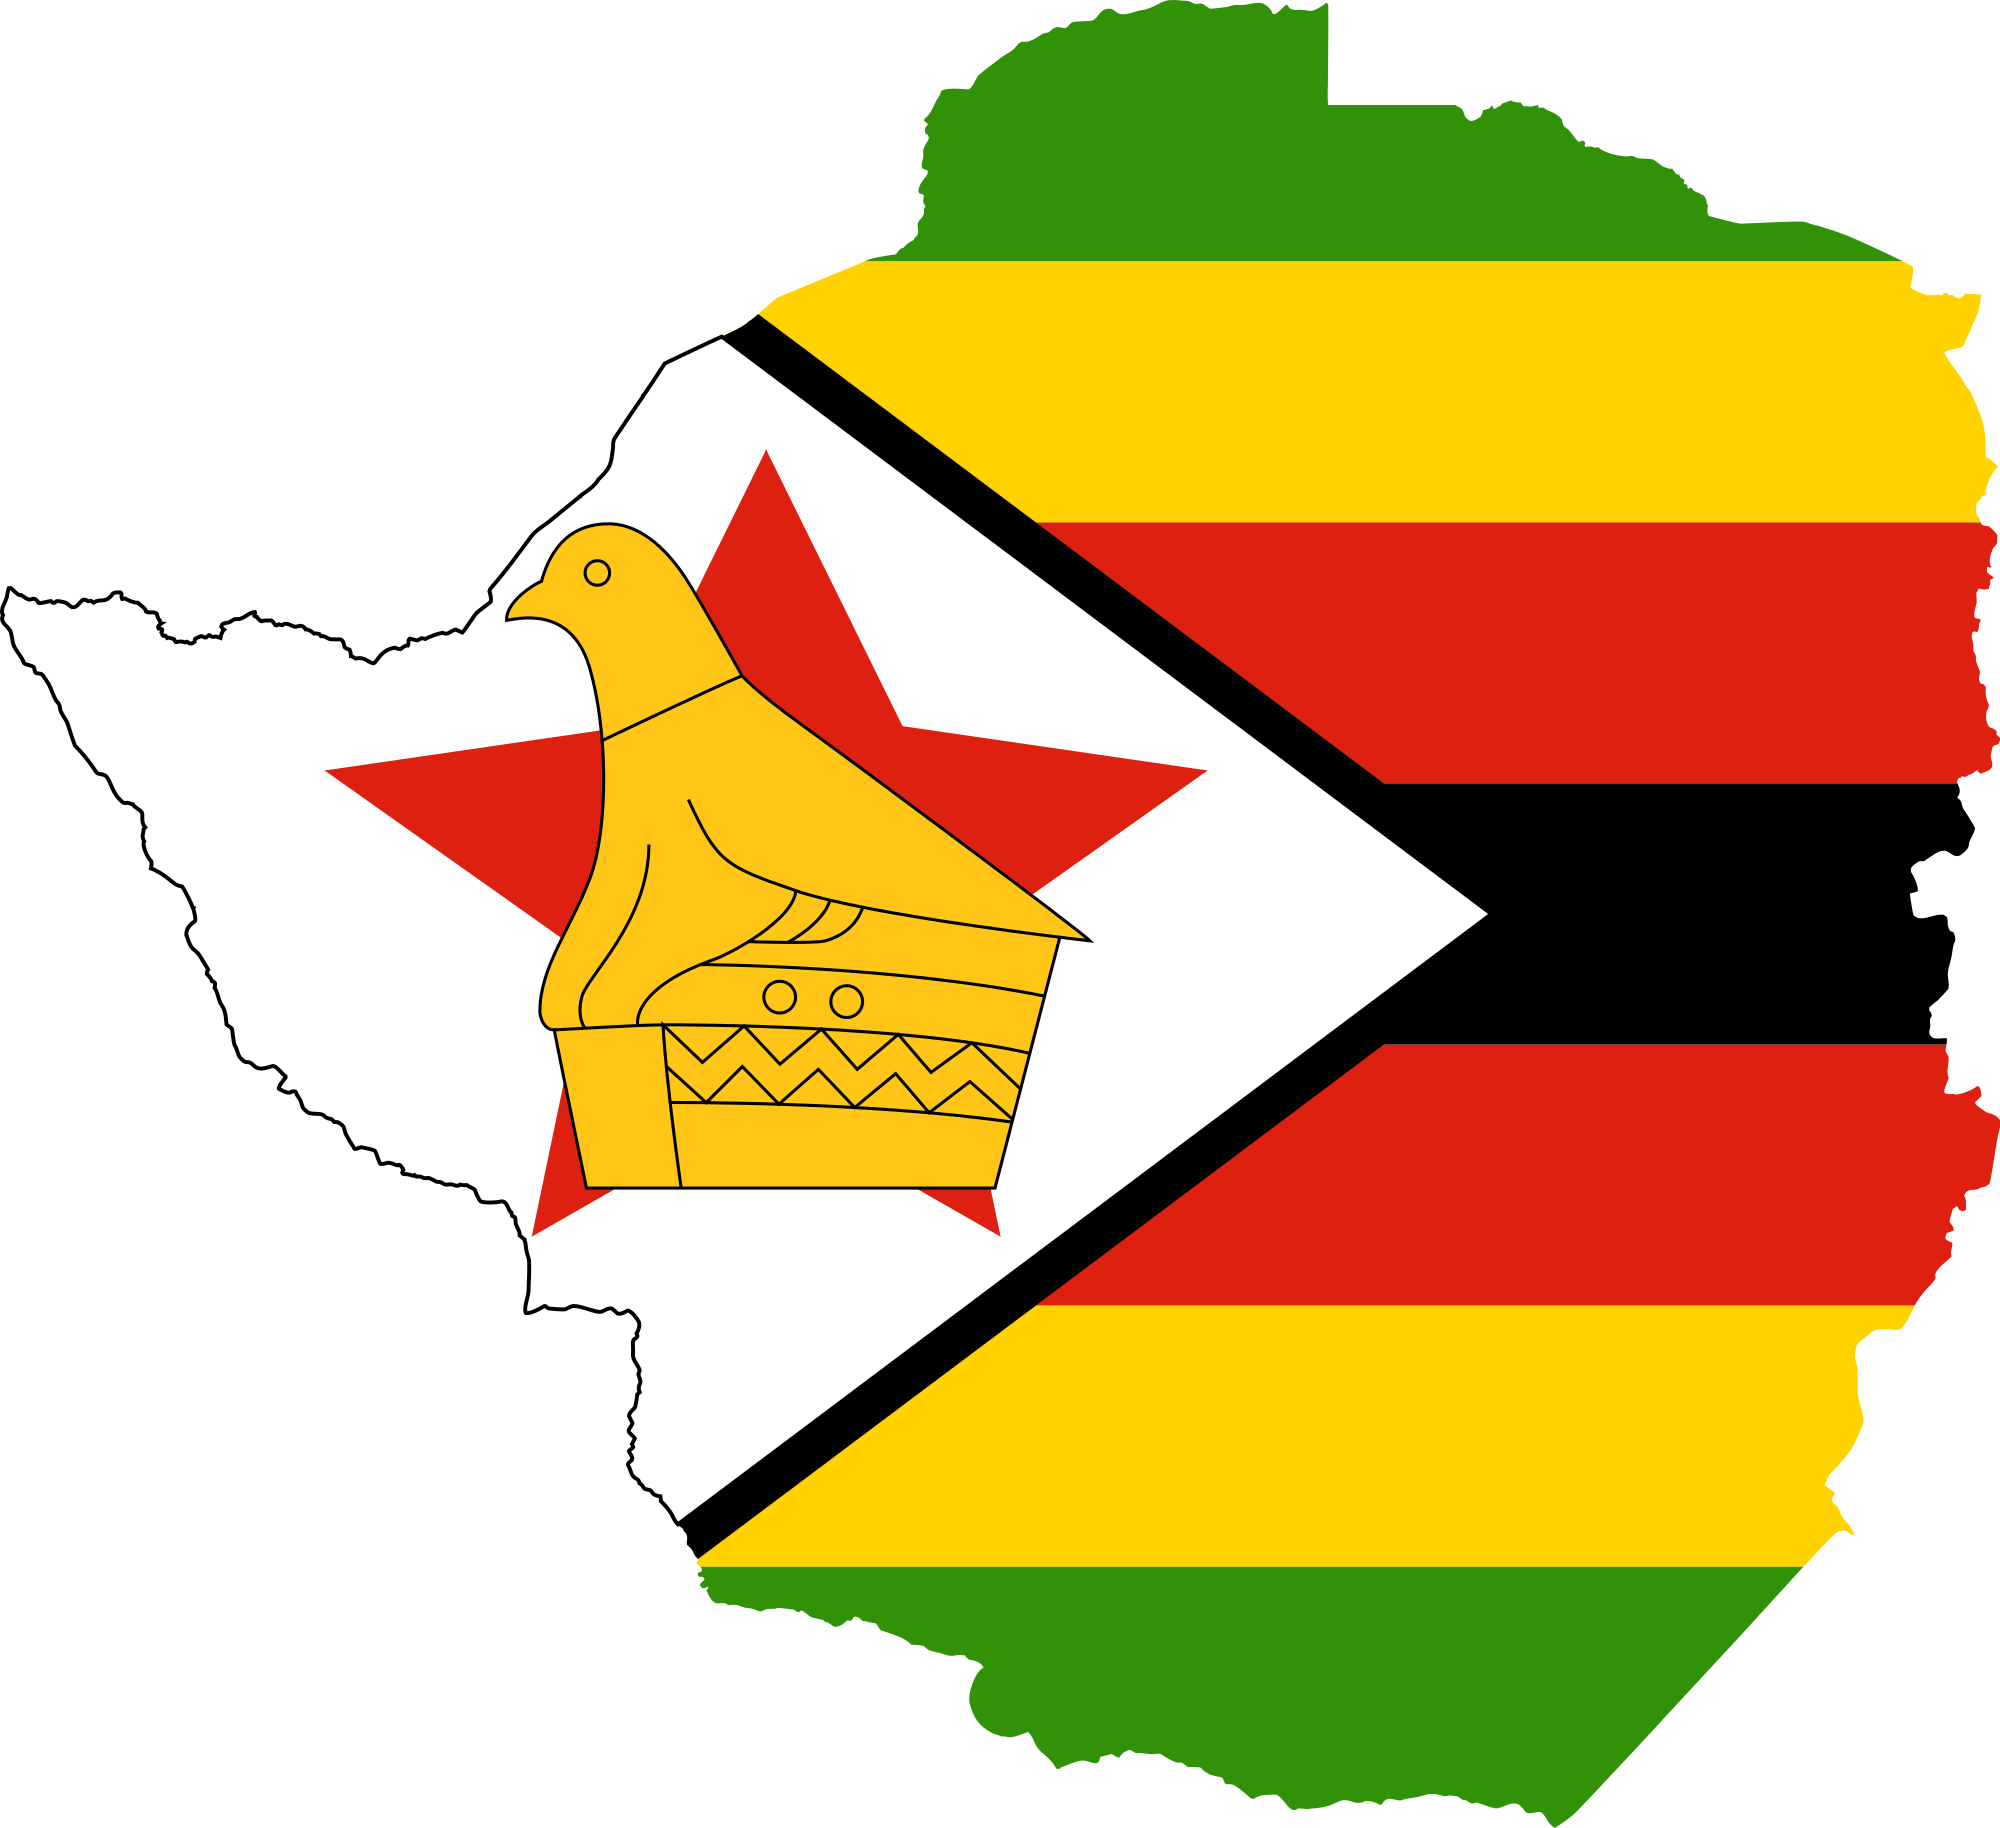 Zimbabwe Flag Transparent Image